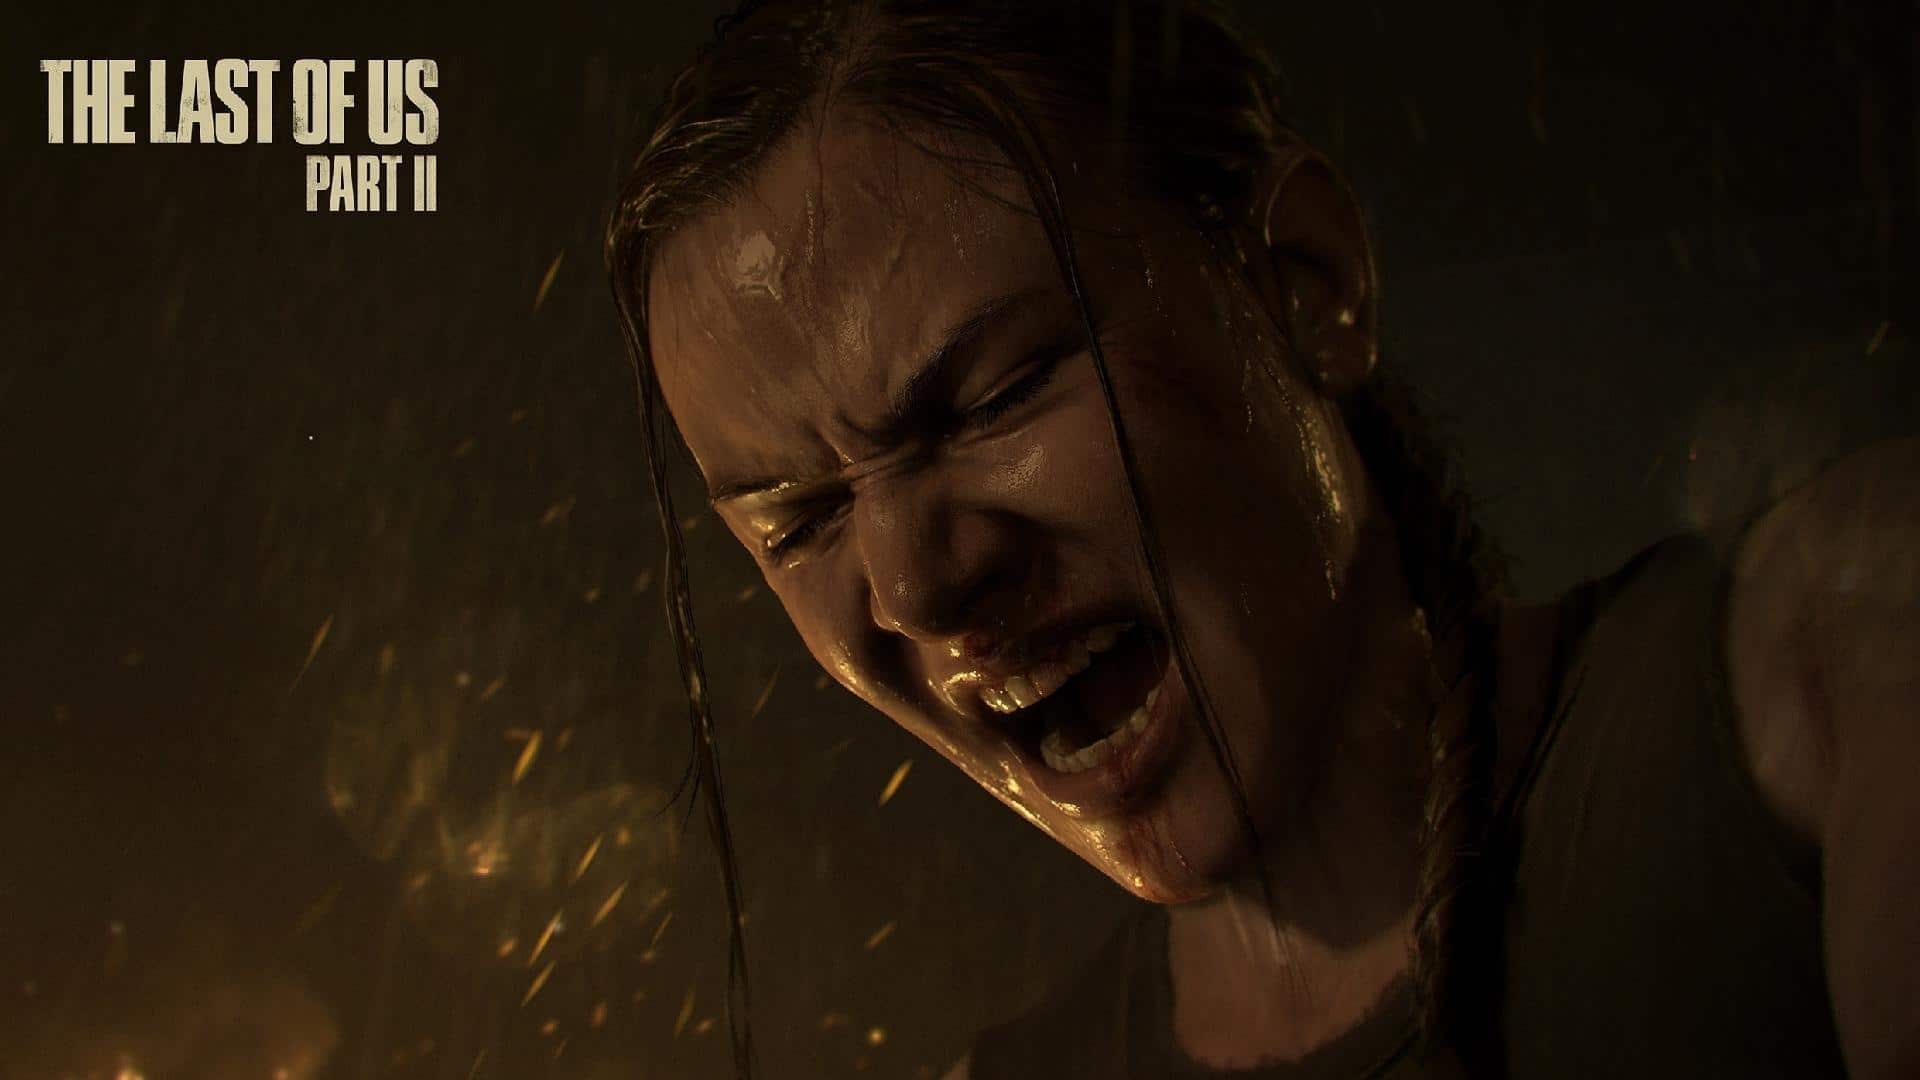 Modelo facial de Abby de The Last of Us: Part II é atacada nas redes